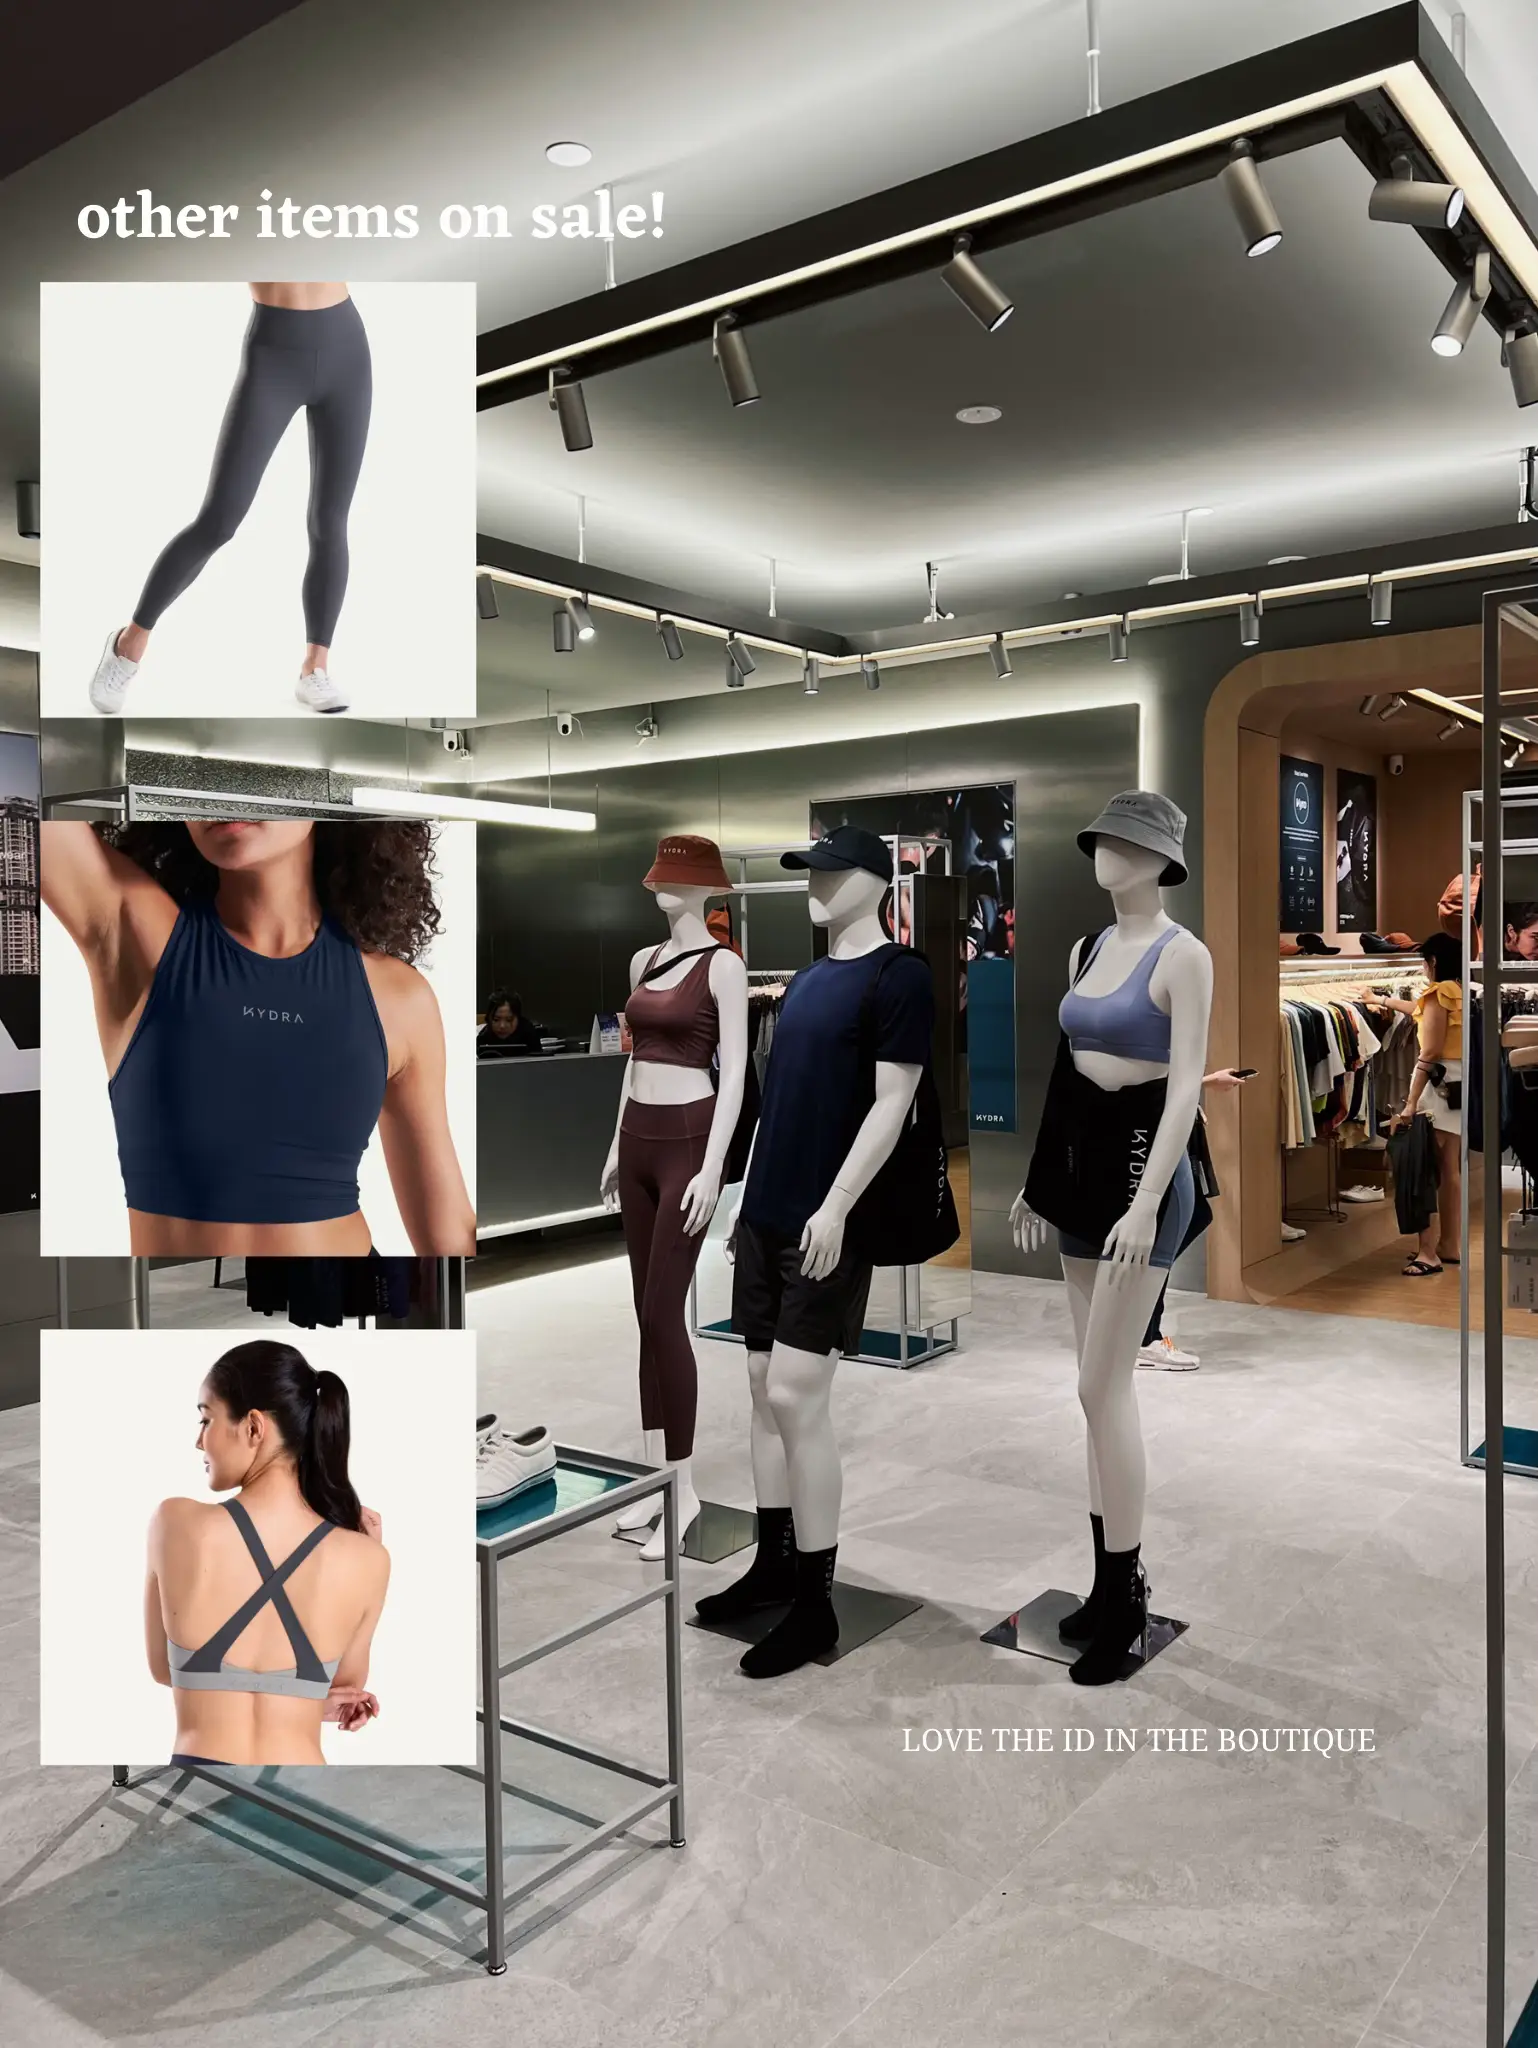 Kydra Sierra Midline Bra, Women's Fashion, Activewear on Carousell